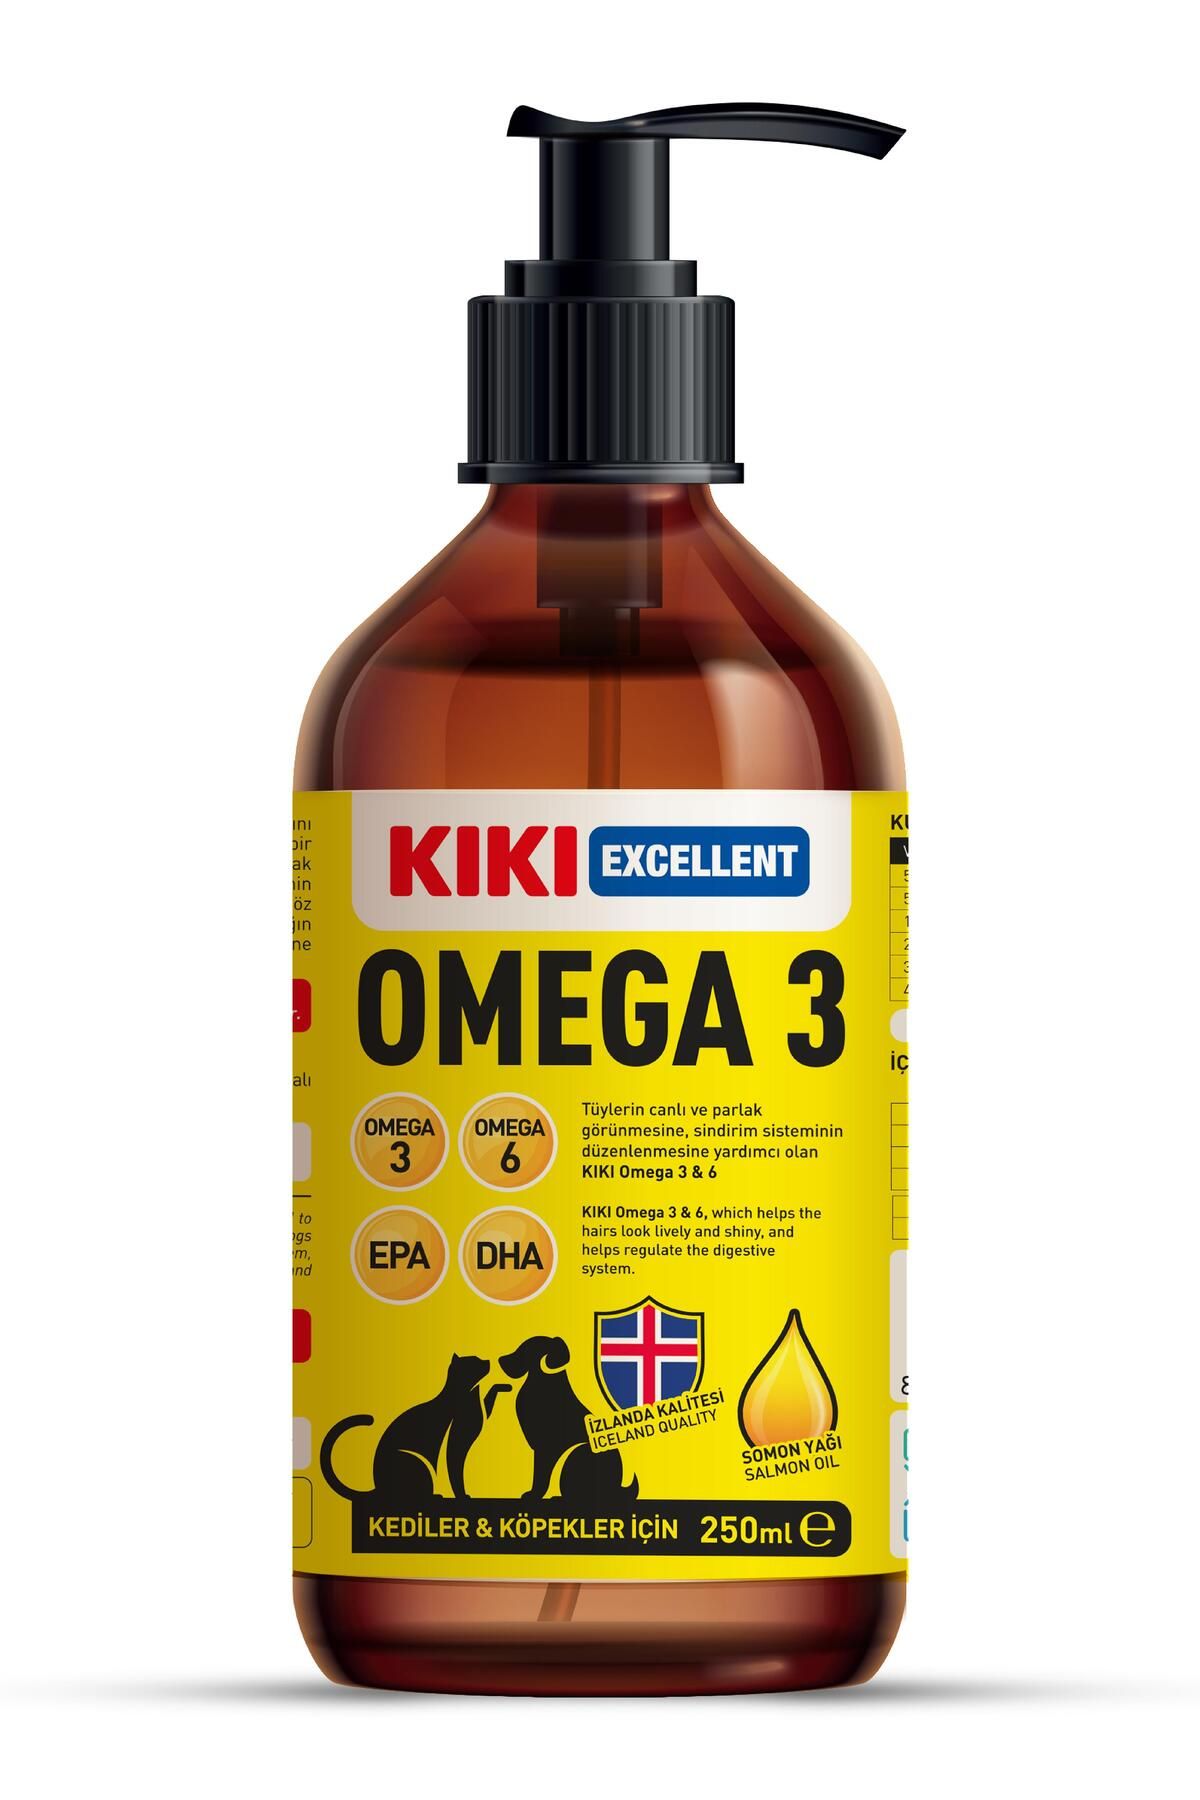 Kiki Excellent Kediler Ve Köpekler Için Omega 3 - Salmon Oil (SOMON YAĞI) - Balık Yağı - Mama Lezzetlendirir 250ml.